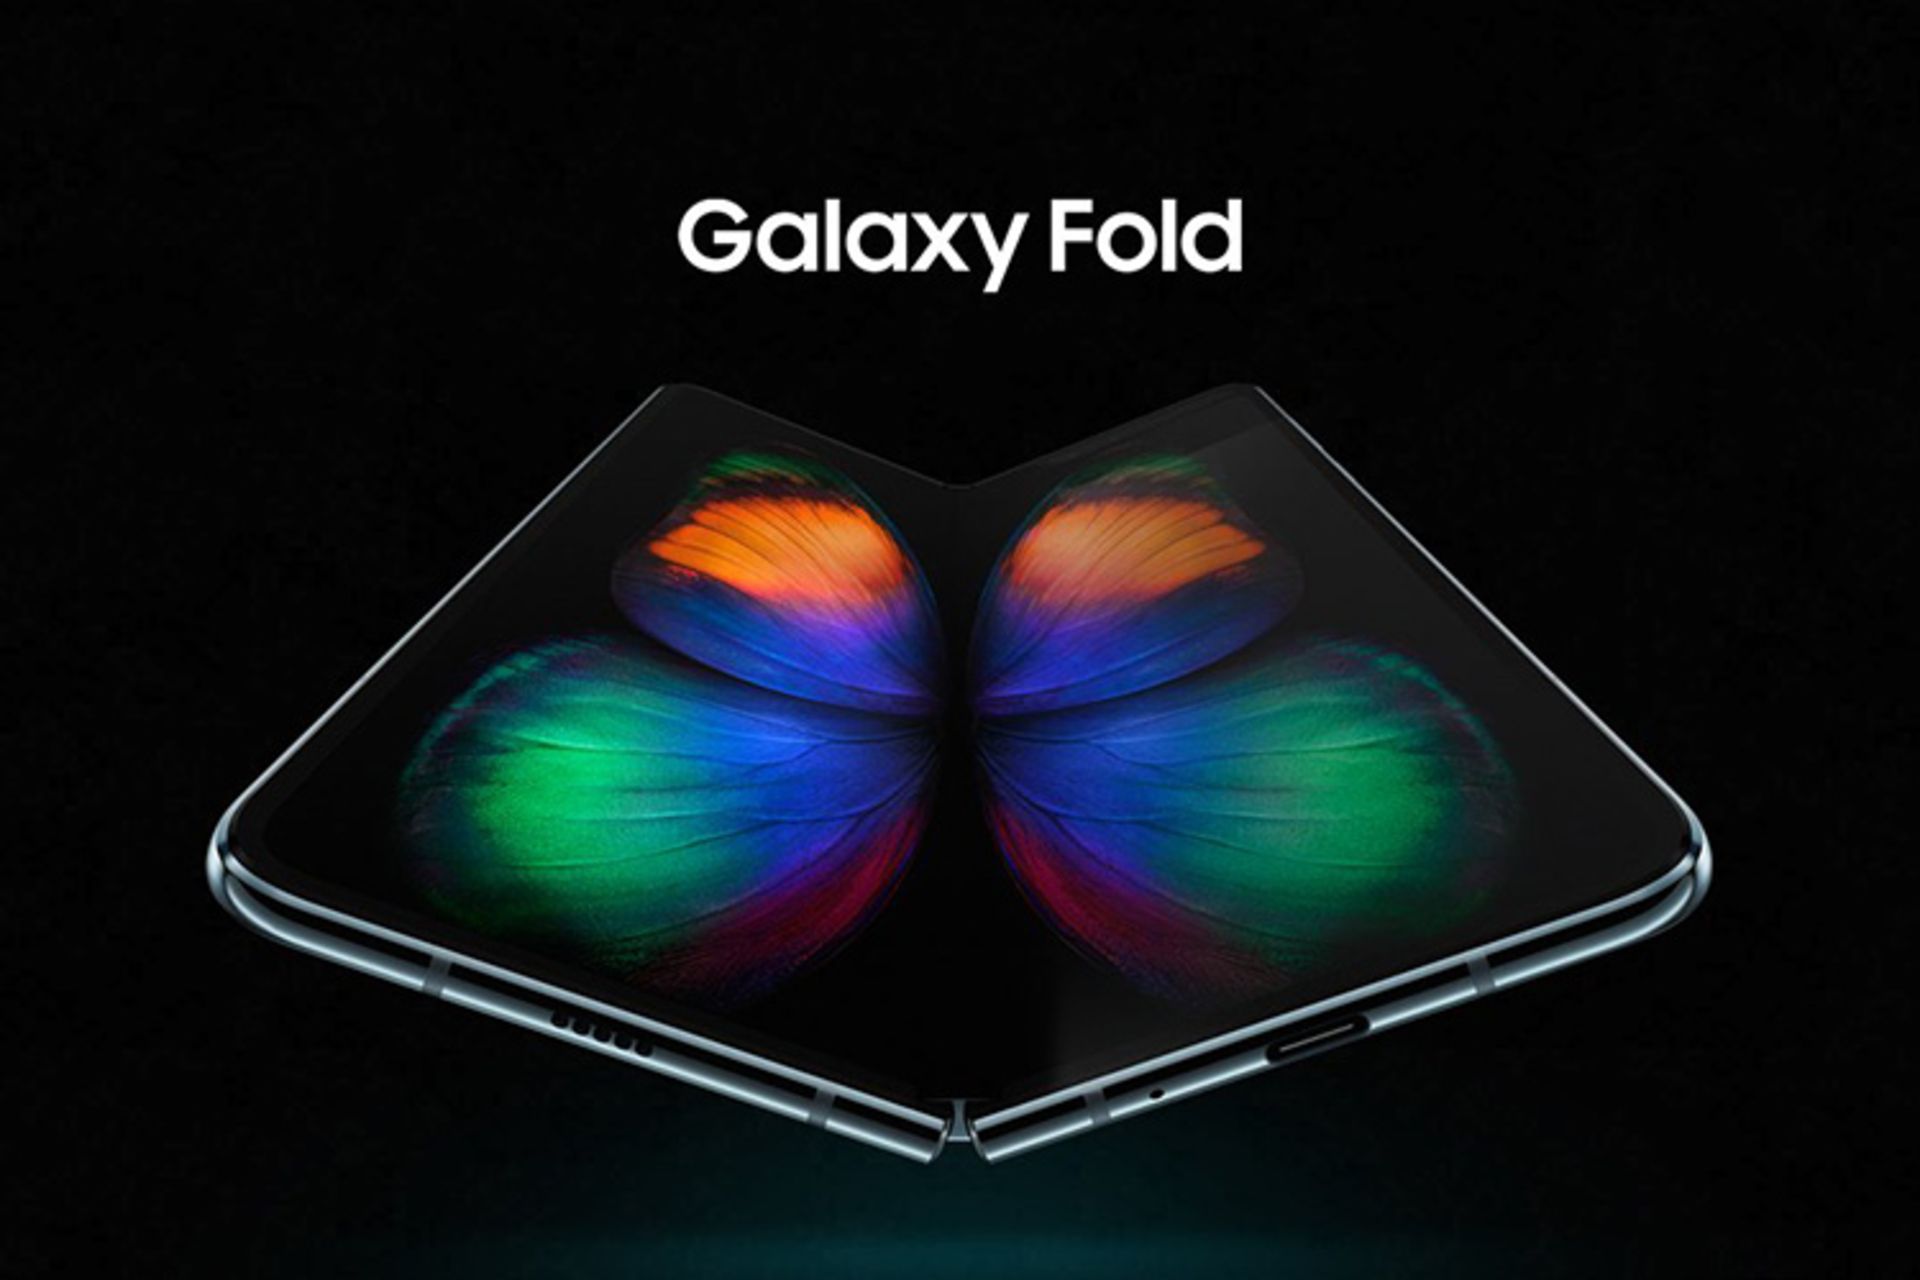 مرجع متخصصين ايران گلكسي فولد / Galaxy Fold